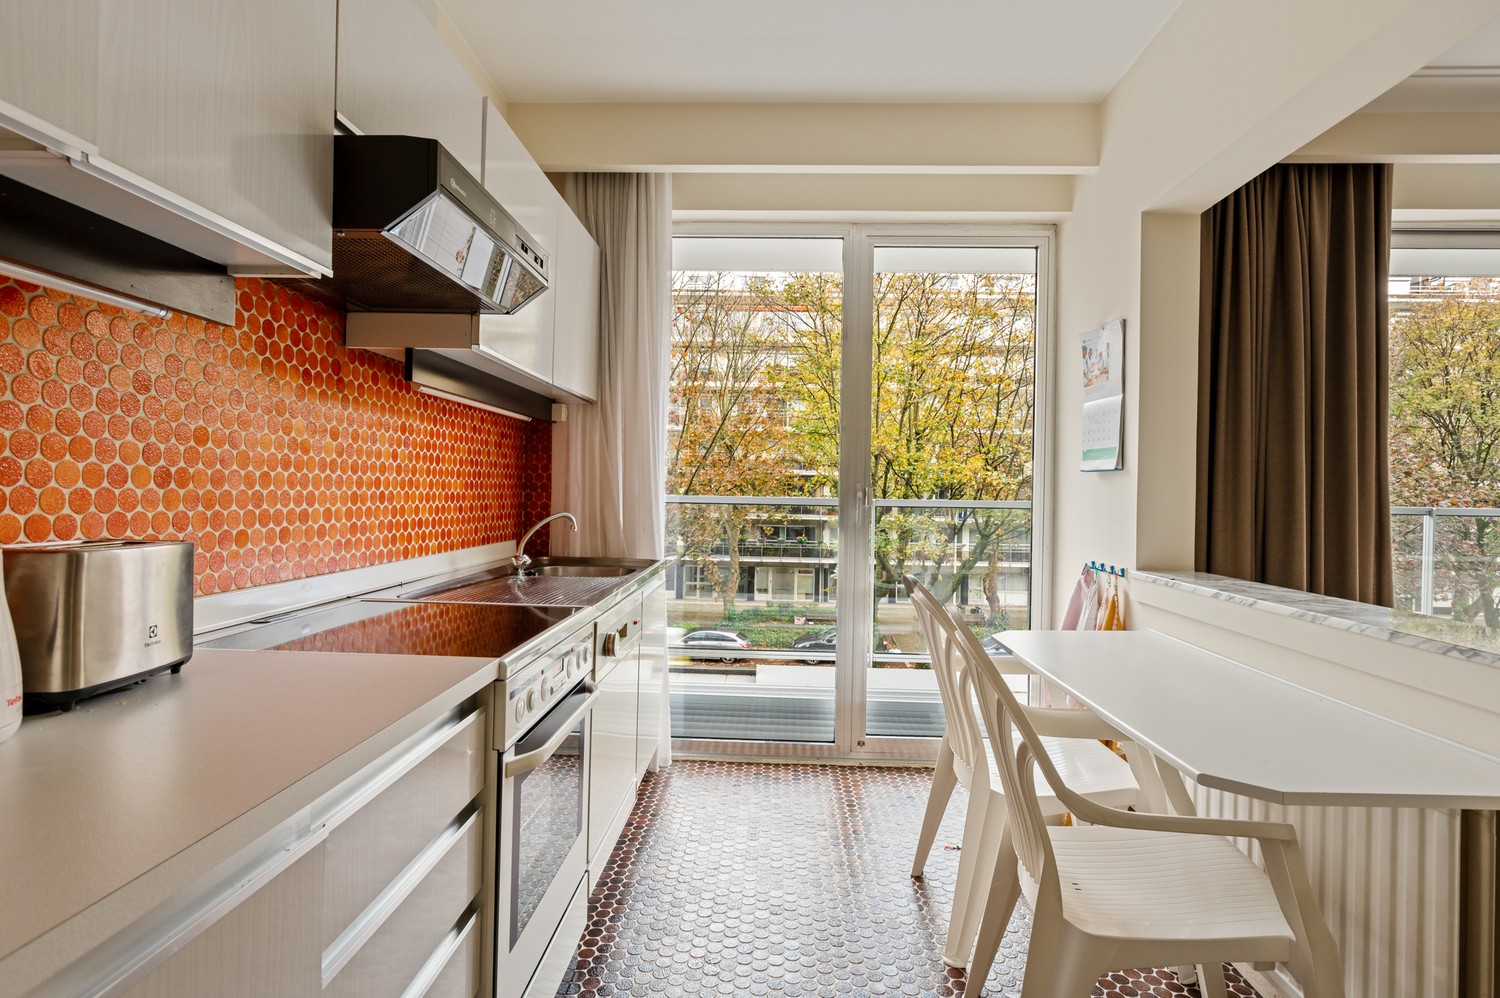 Appartement met drie slaapkamers, prachtig terras op gegeerde locatie in Deurne! afbeelding 9